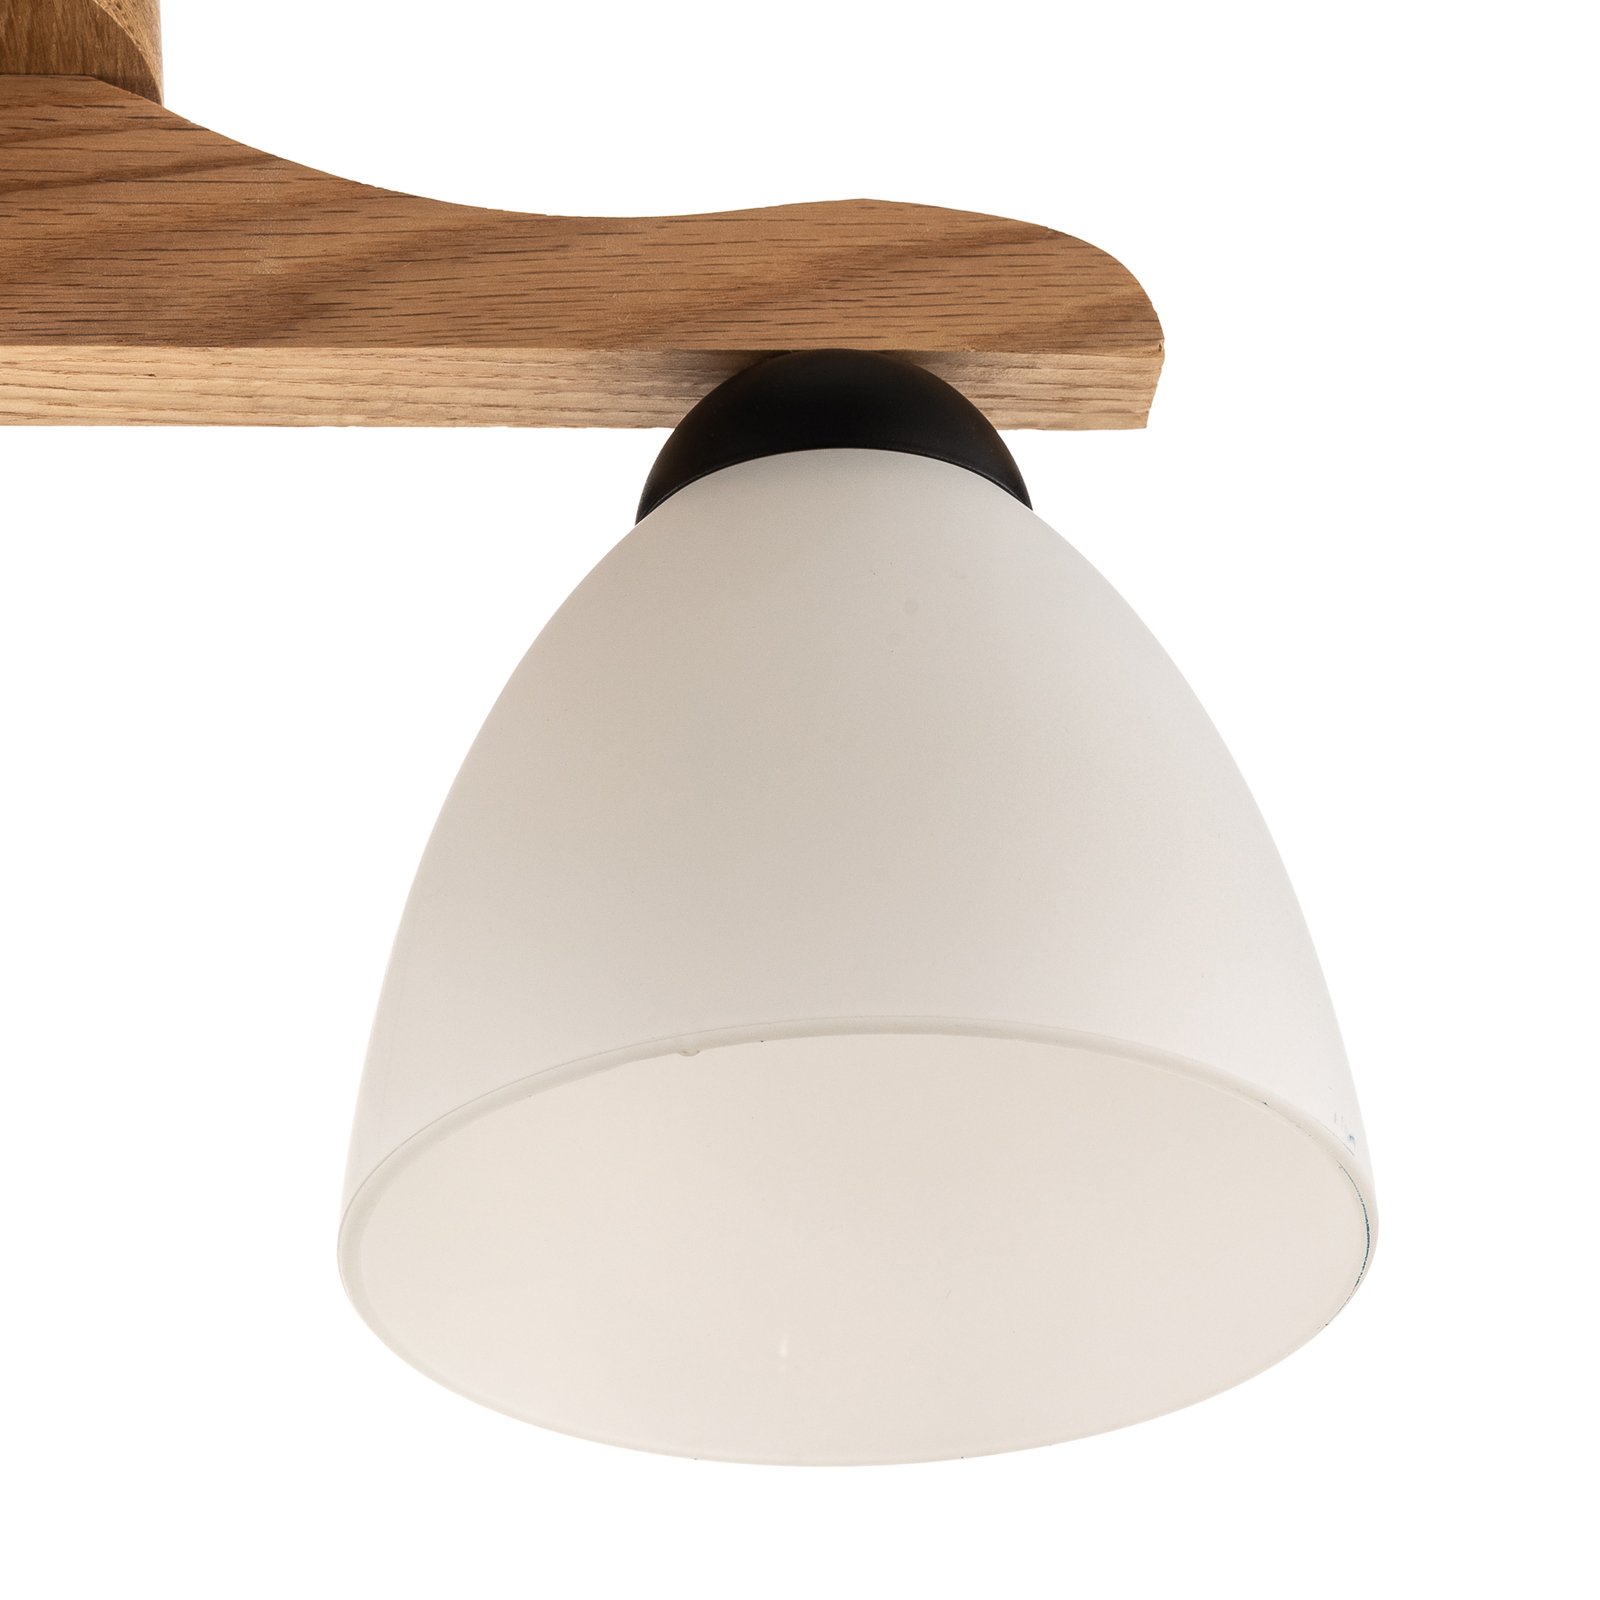 Haro ceiling light, oak/white three-bulb